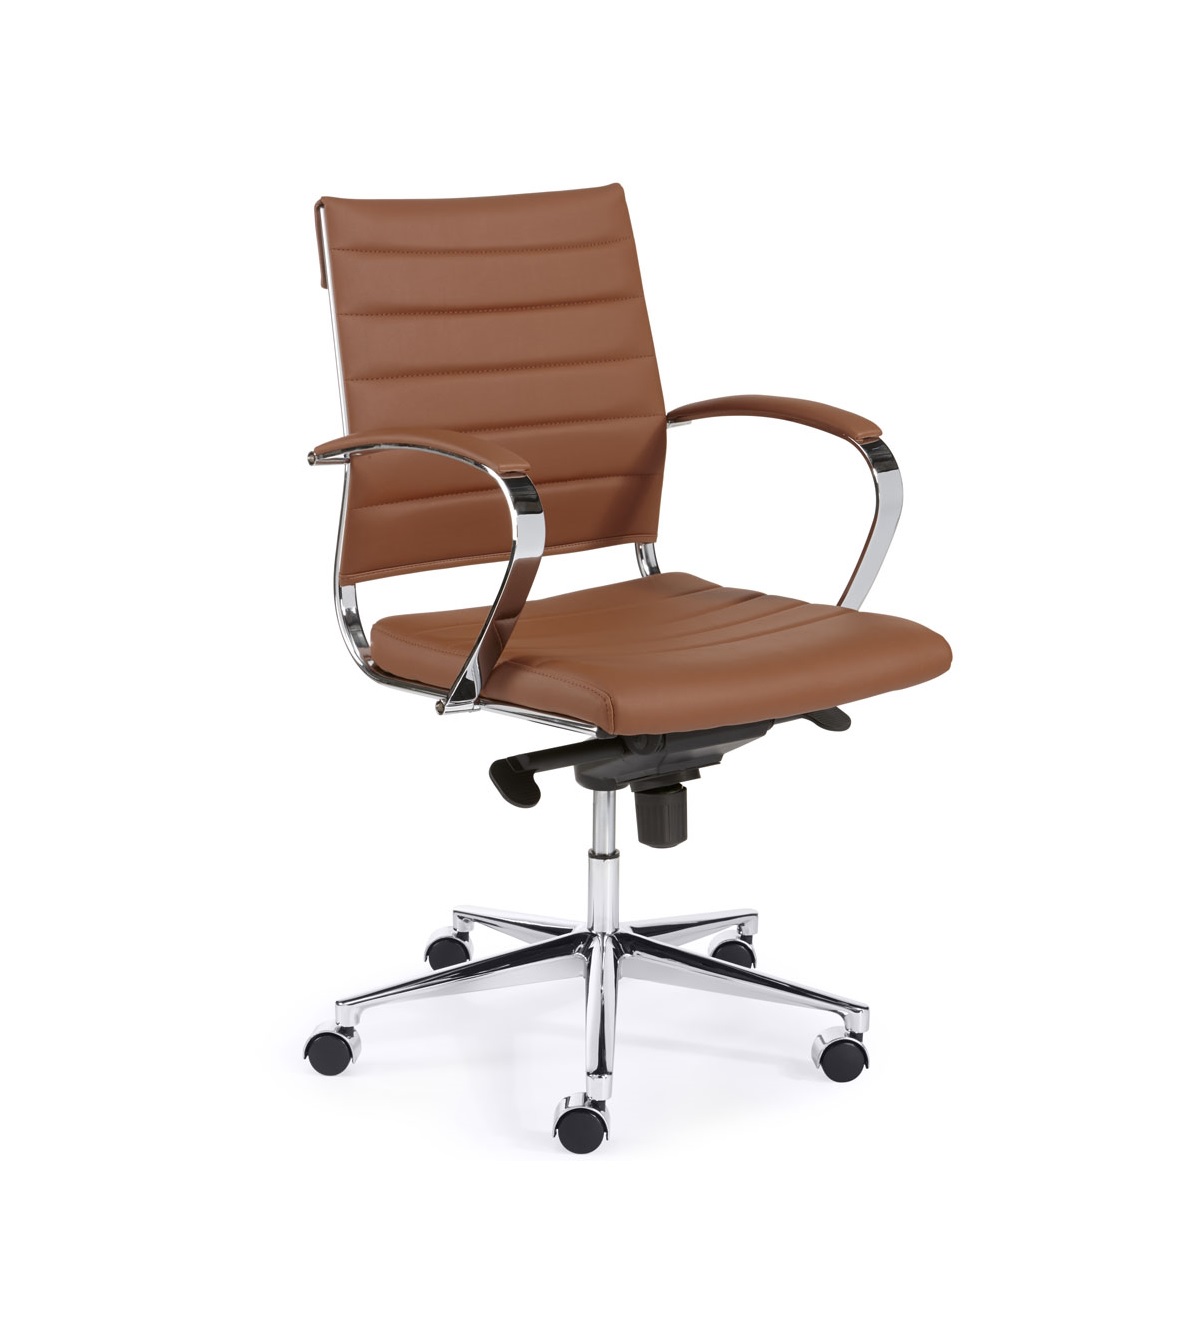 Scenario Minder dan Grote waanidee Design bureaustoel lage rug in bruin/cognac - Bureaustoel.nu